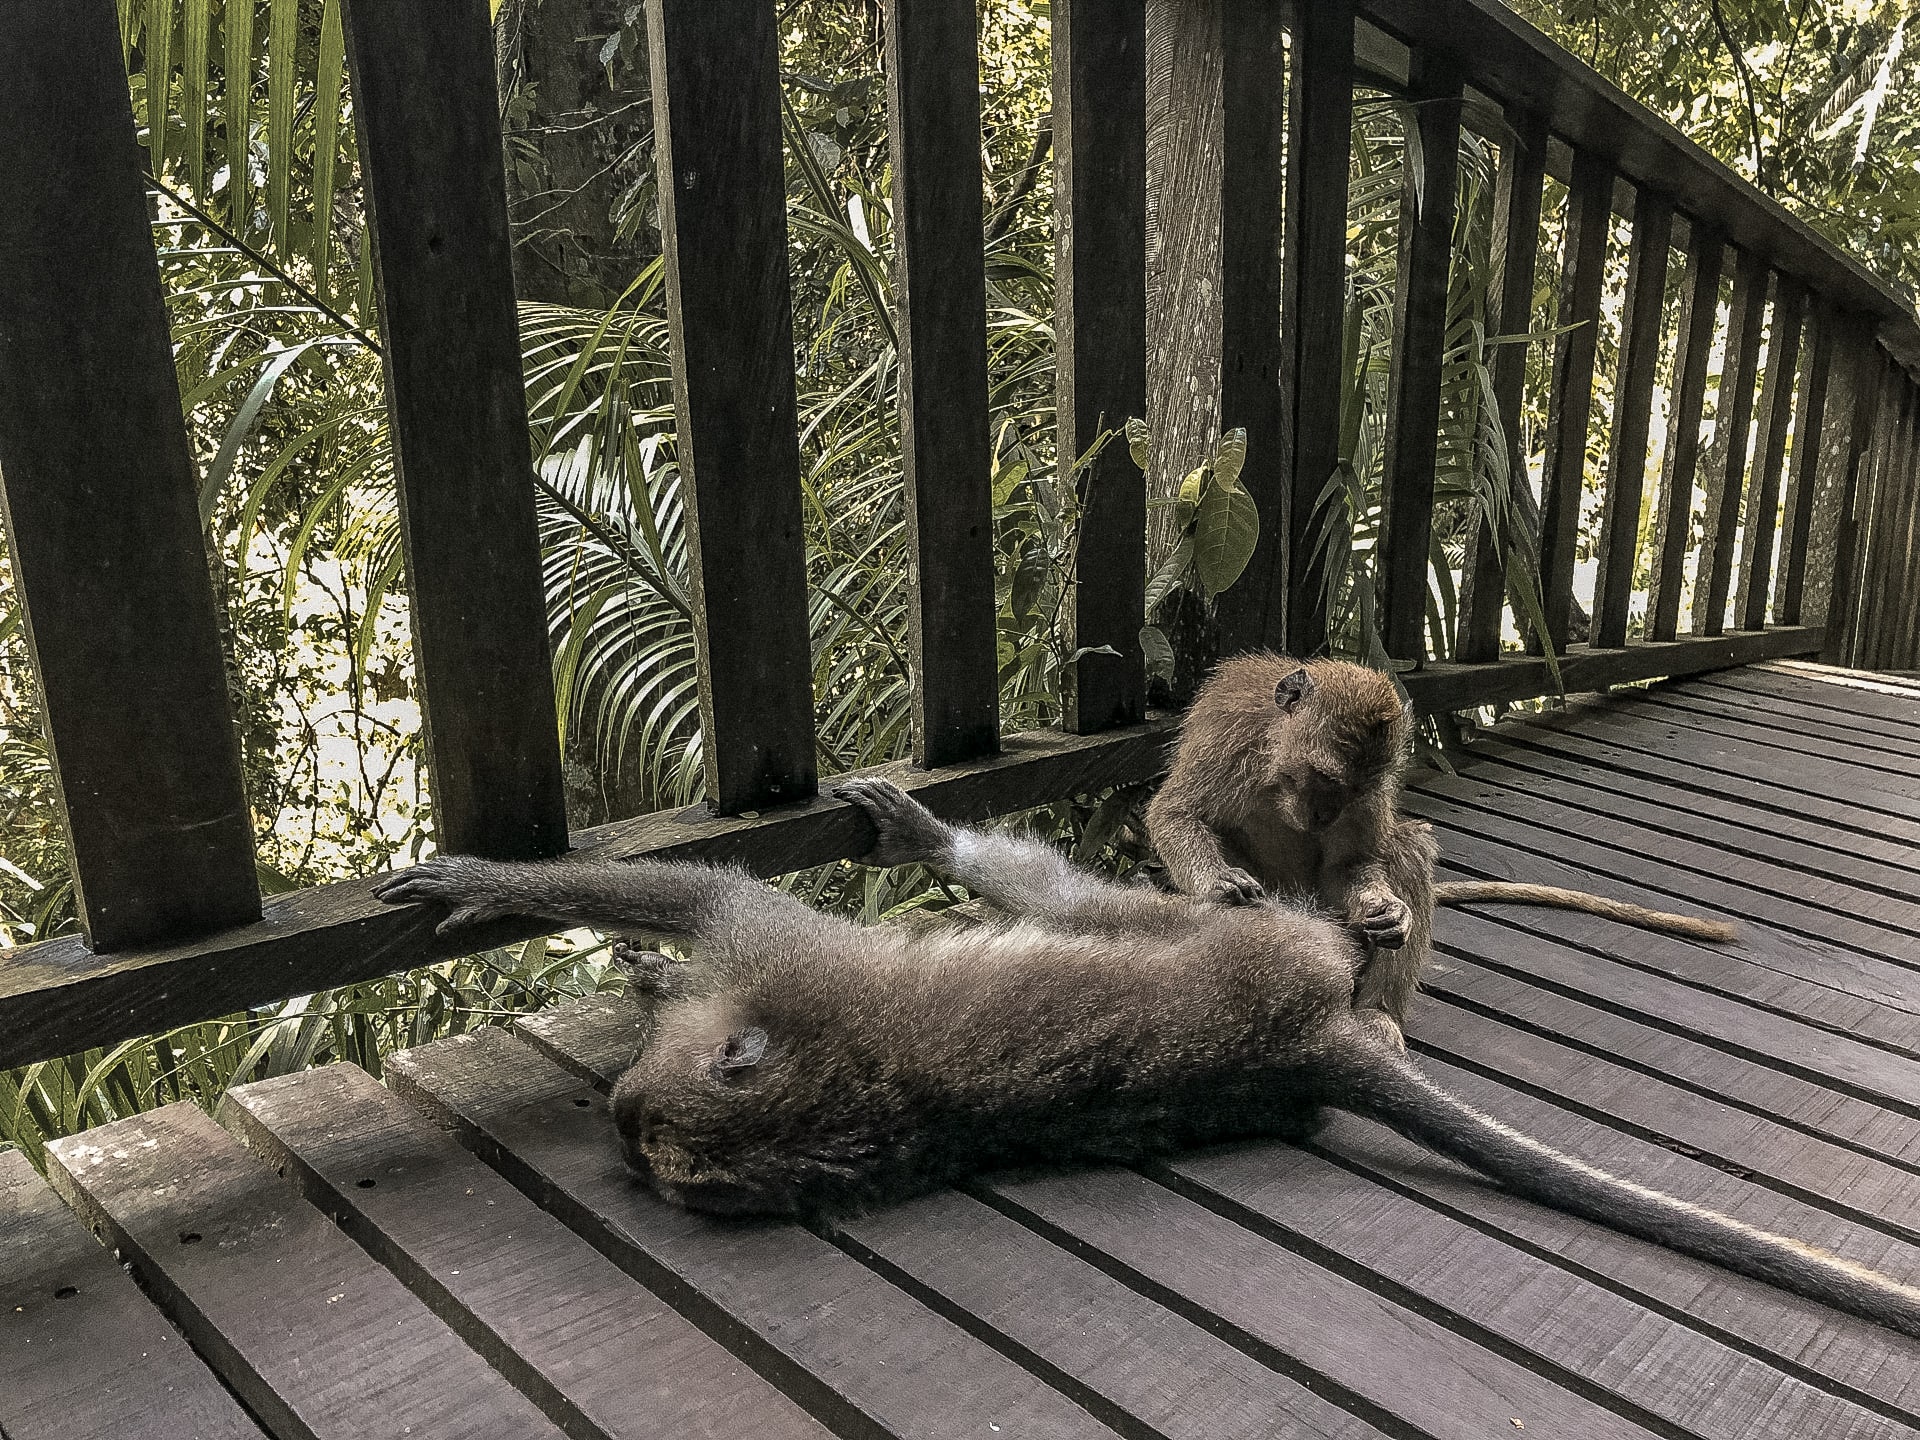 Monkeys on boardwalk in Monkey Forest